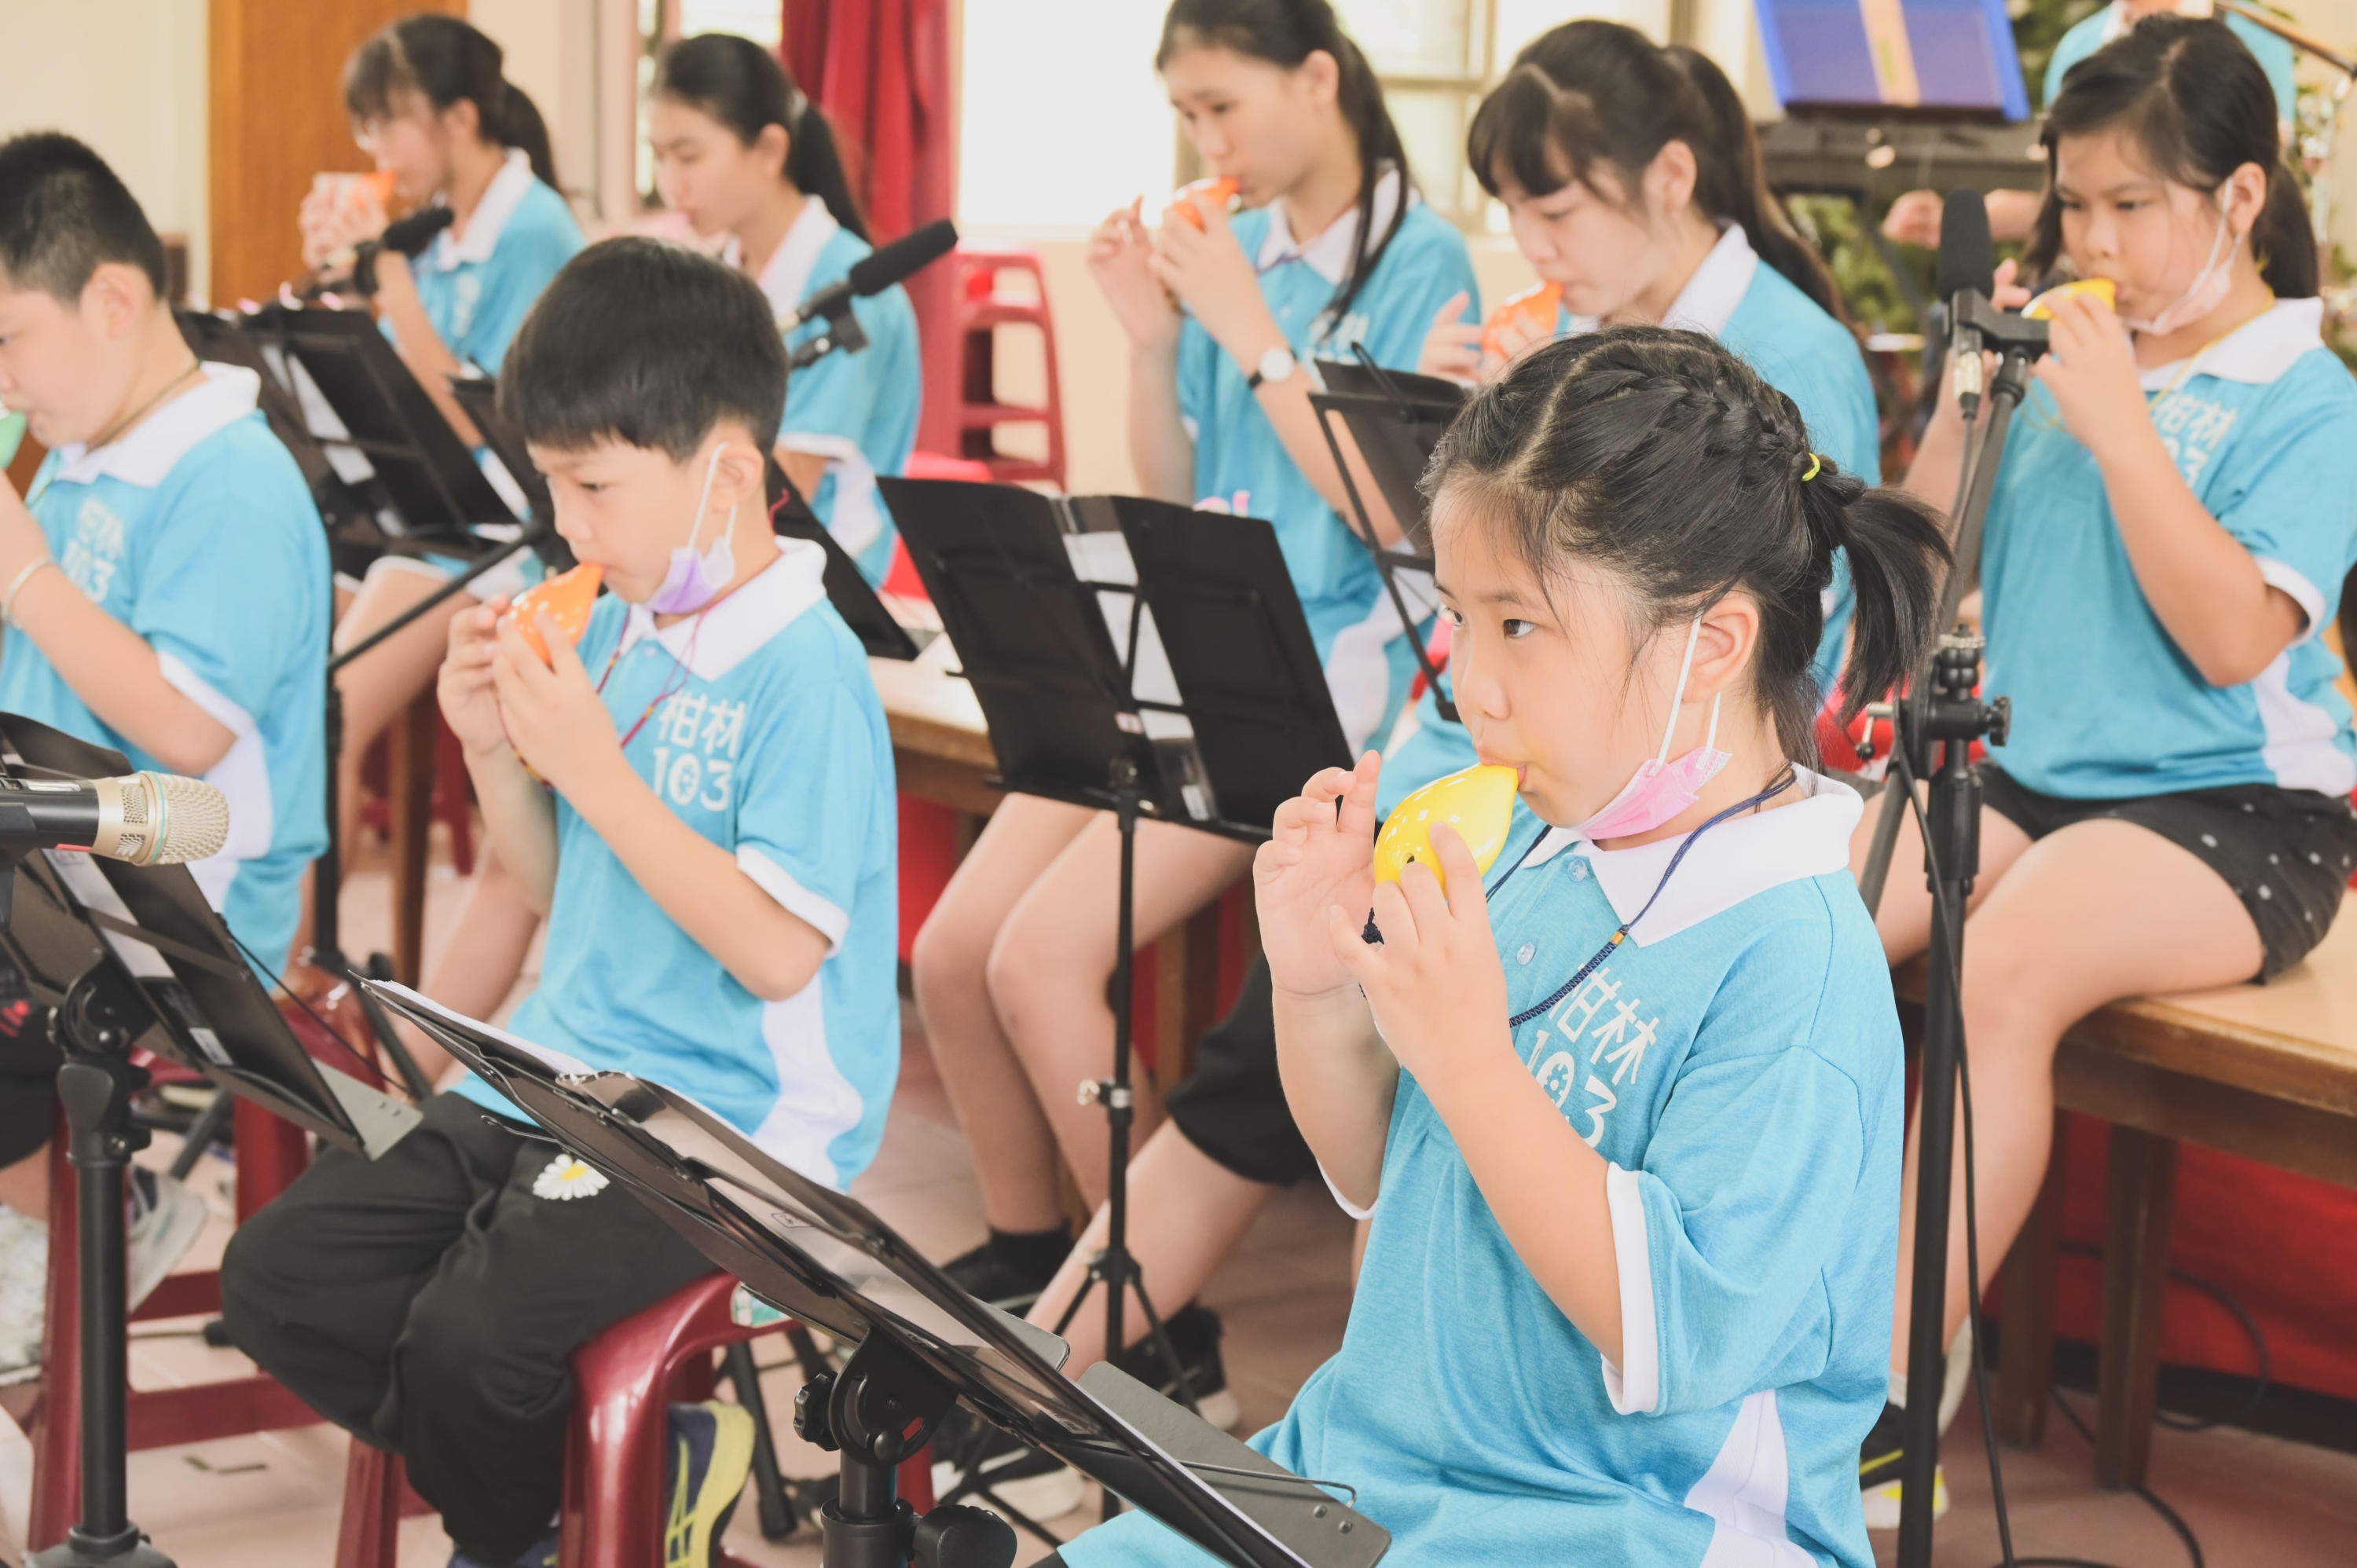 2.柑林國小開設「柑林音樂會」課程，帶領孩子體驗陶笛吹奏的樂趣。.jpg